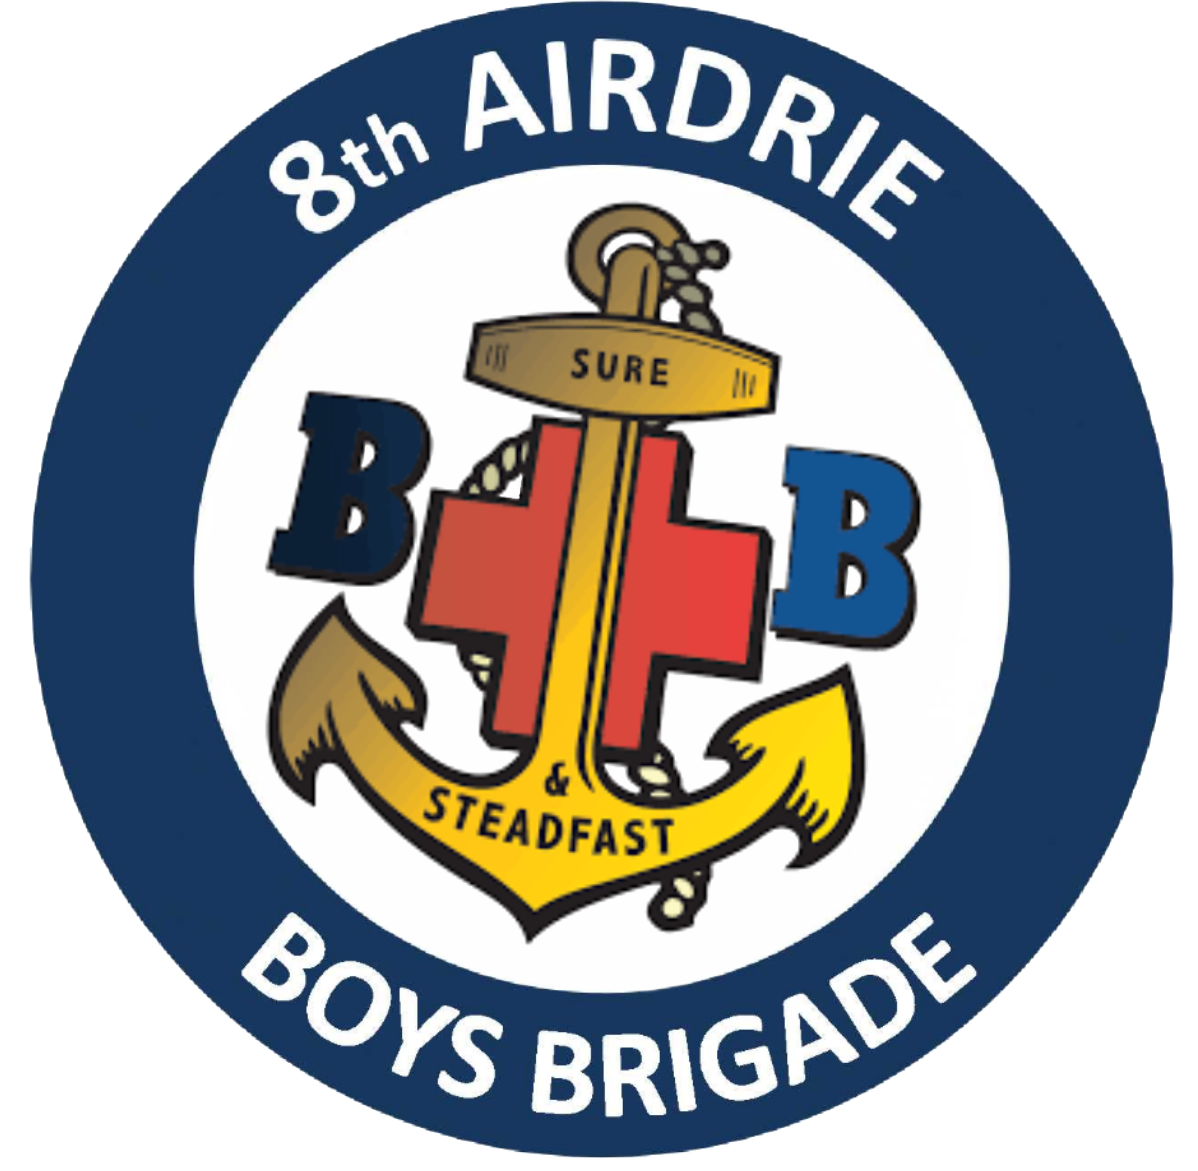 8th Airdrie Boys Brigade